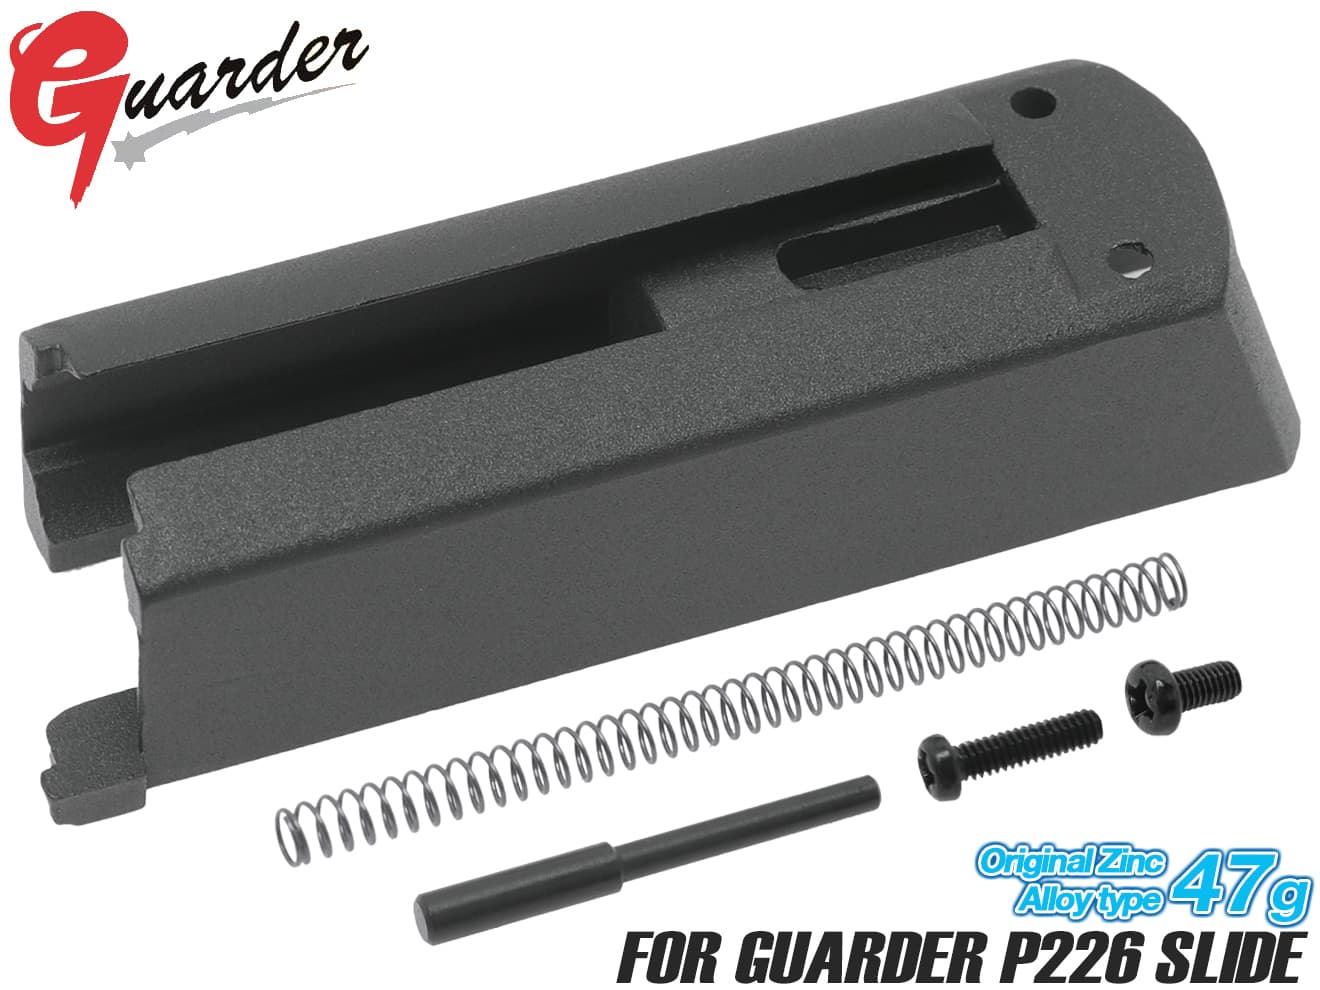 GUARDER ダイキャスト ノズルハウジング for Guarder P226 スライド【ゆうパケット可】